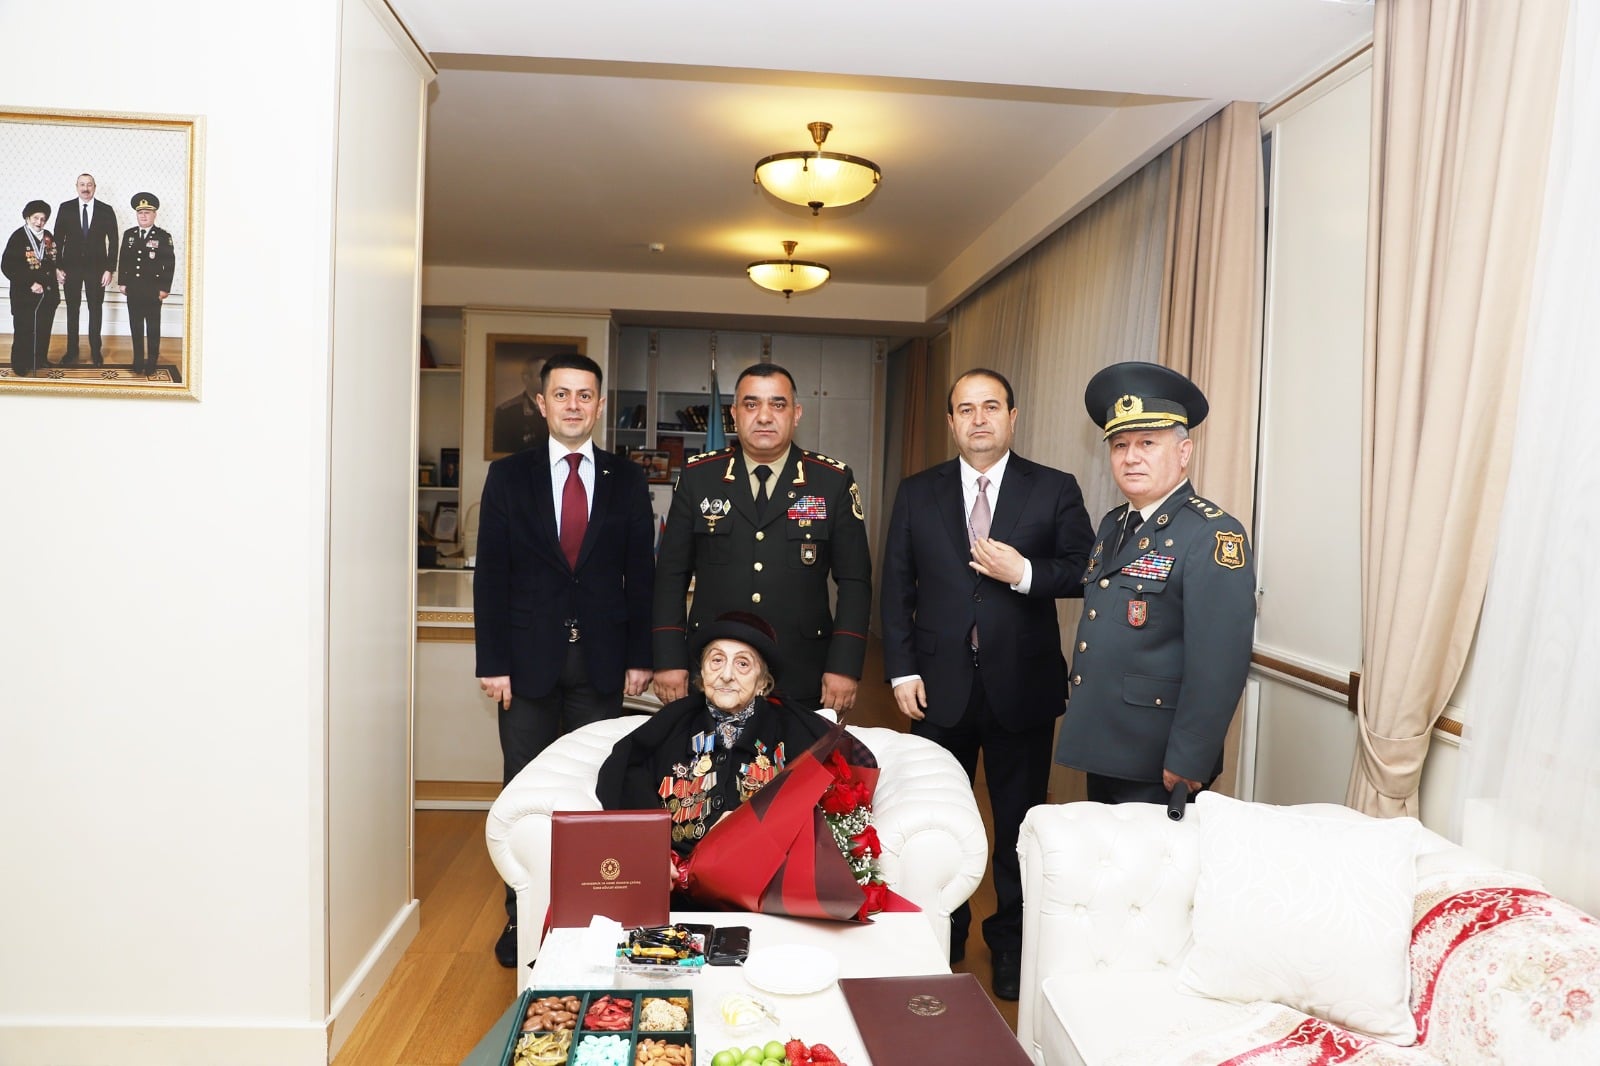 Dövlət Xidməti 102 yaşlı veteranı təltif etdi